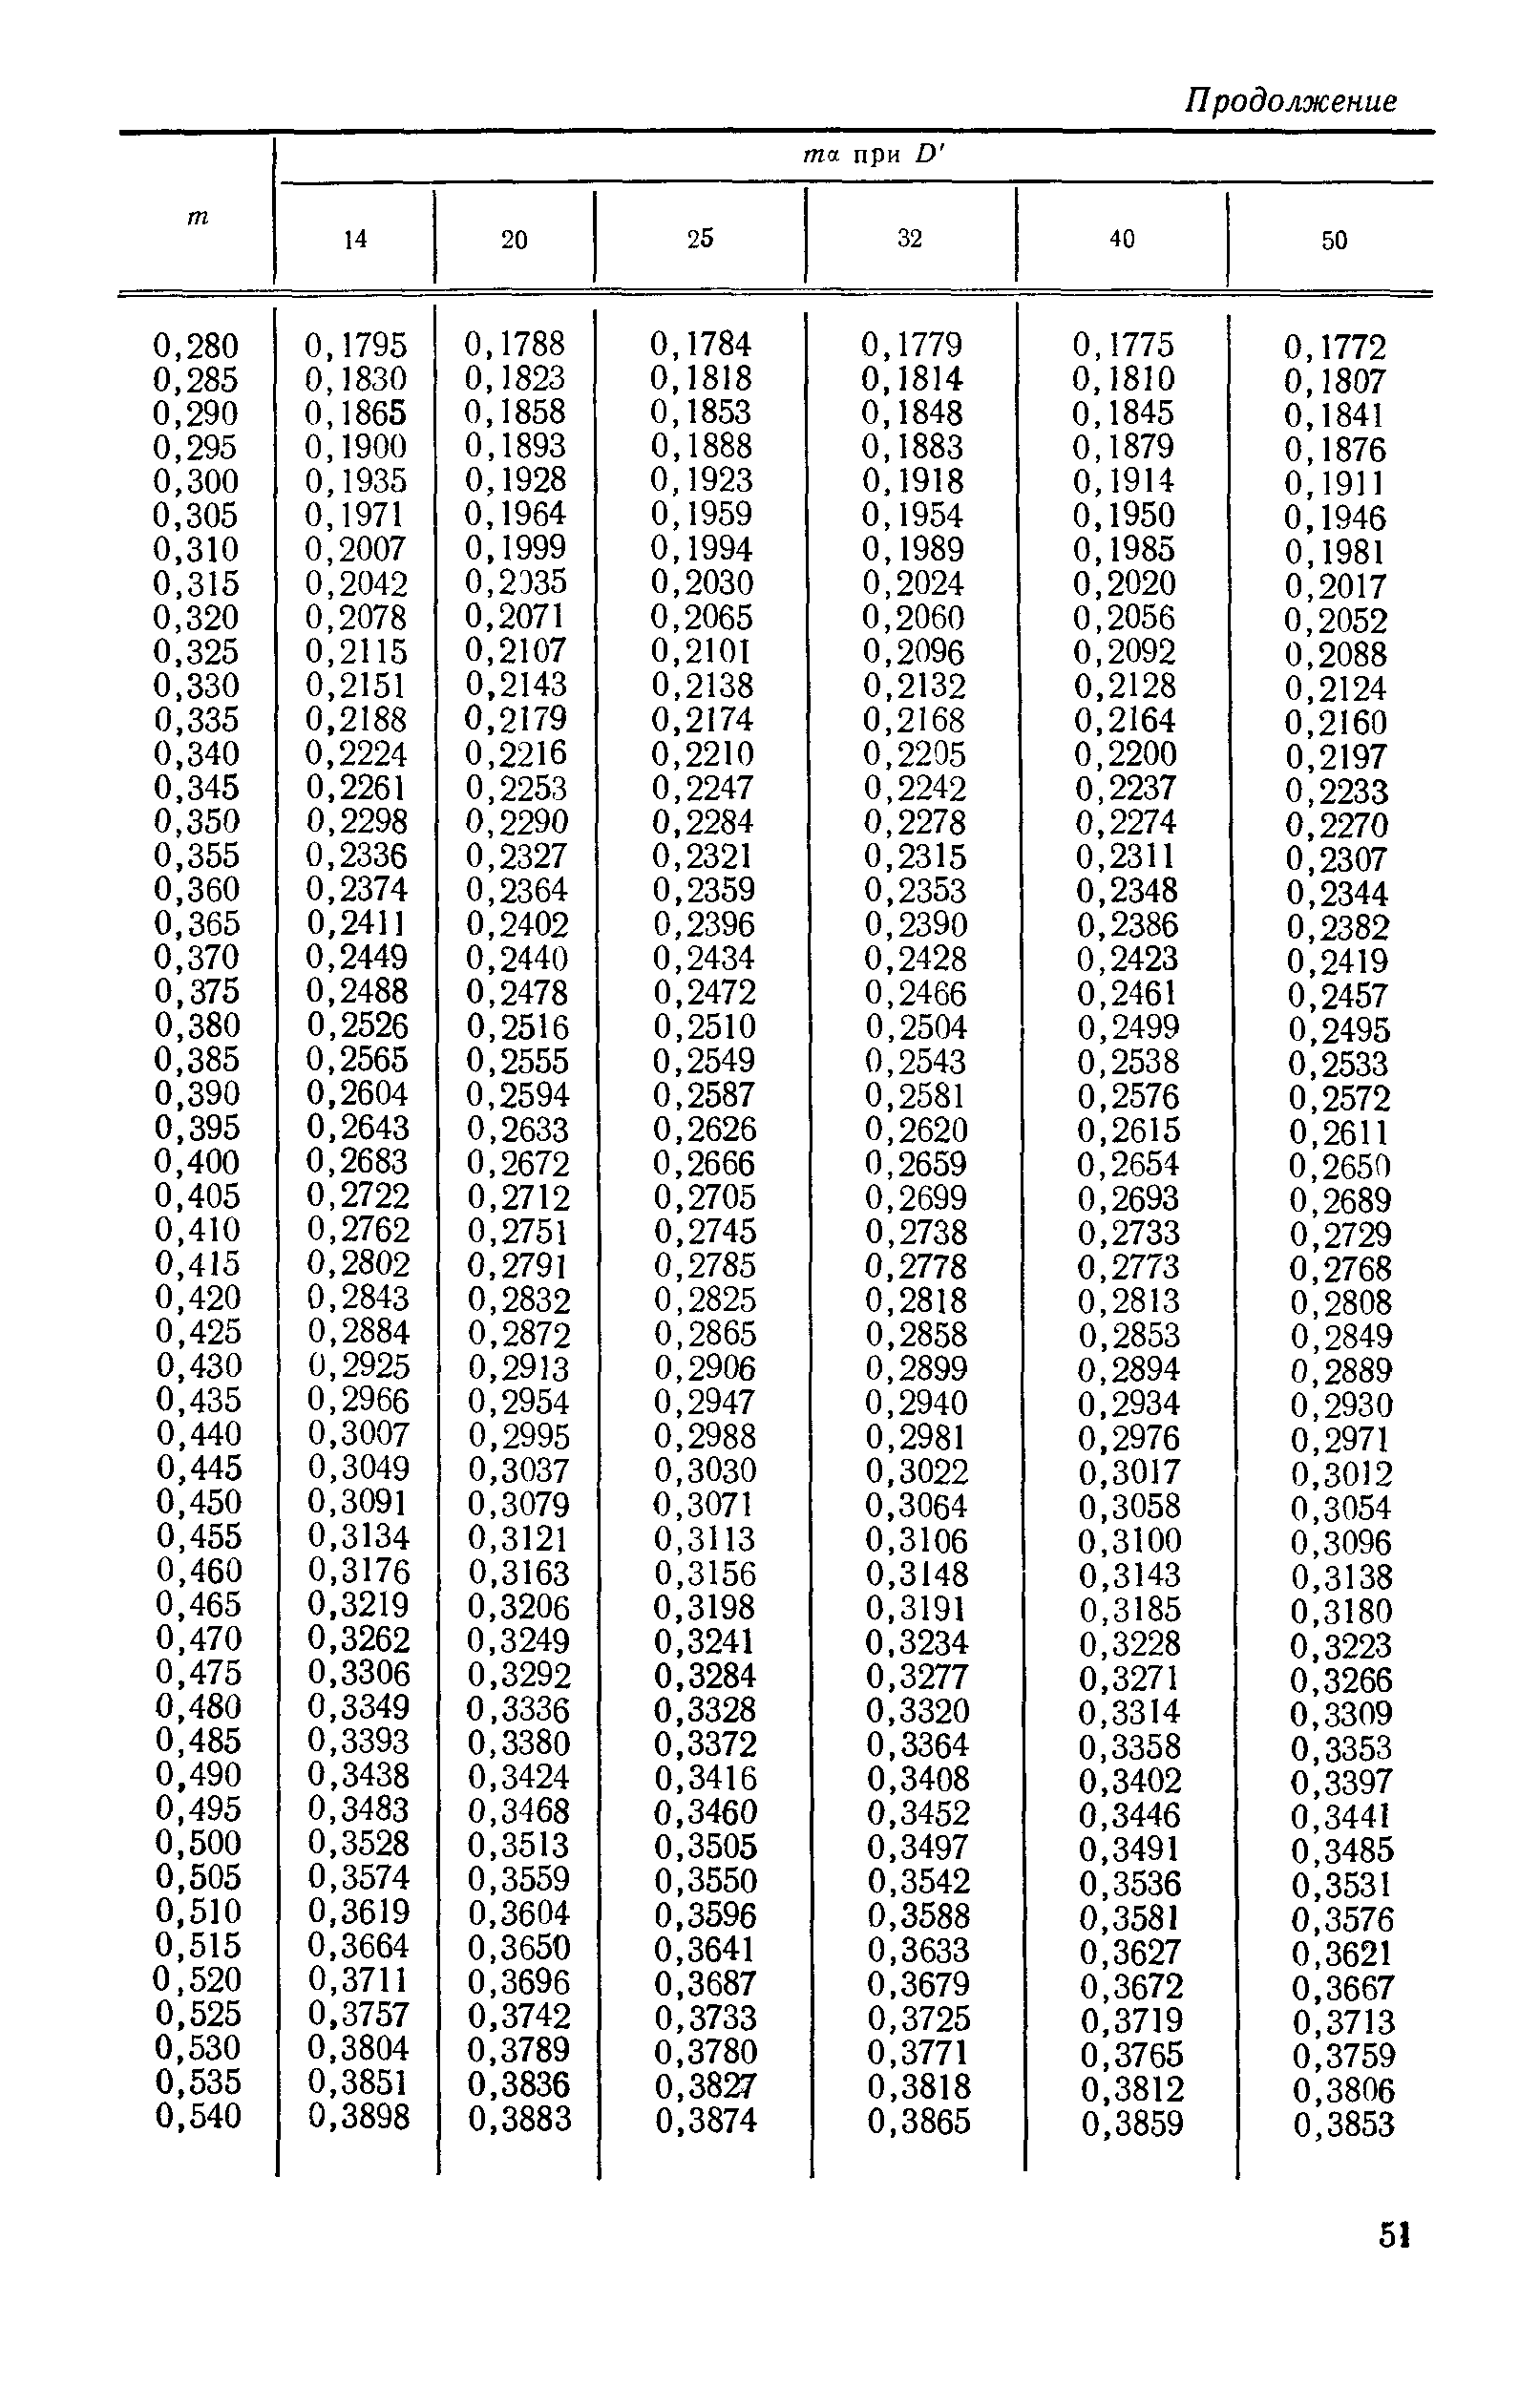 РД 50-411-83